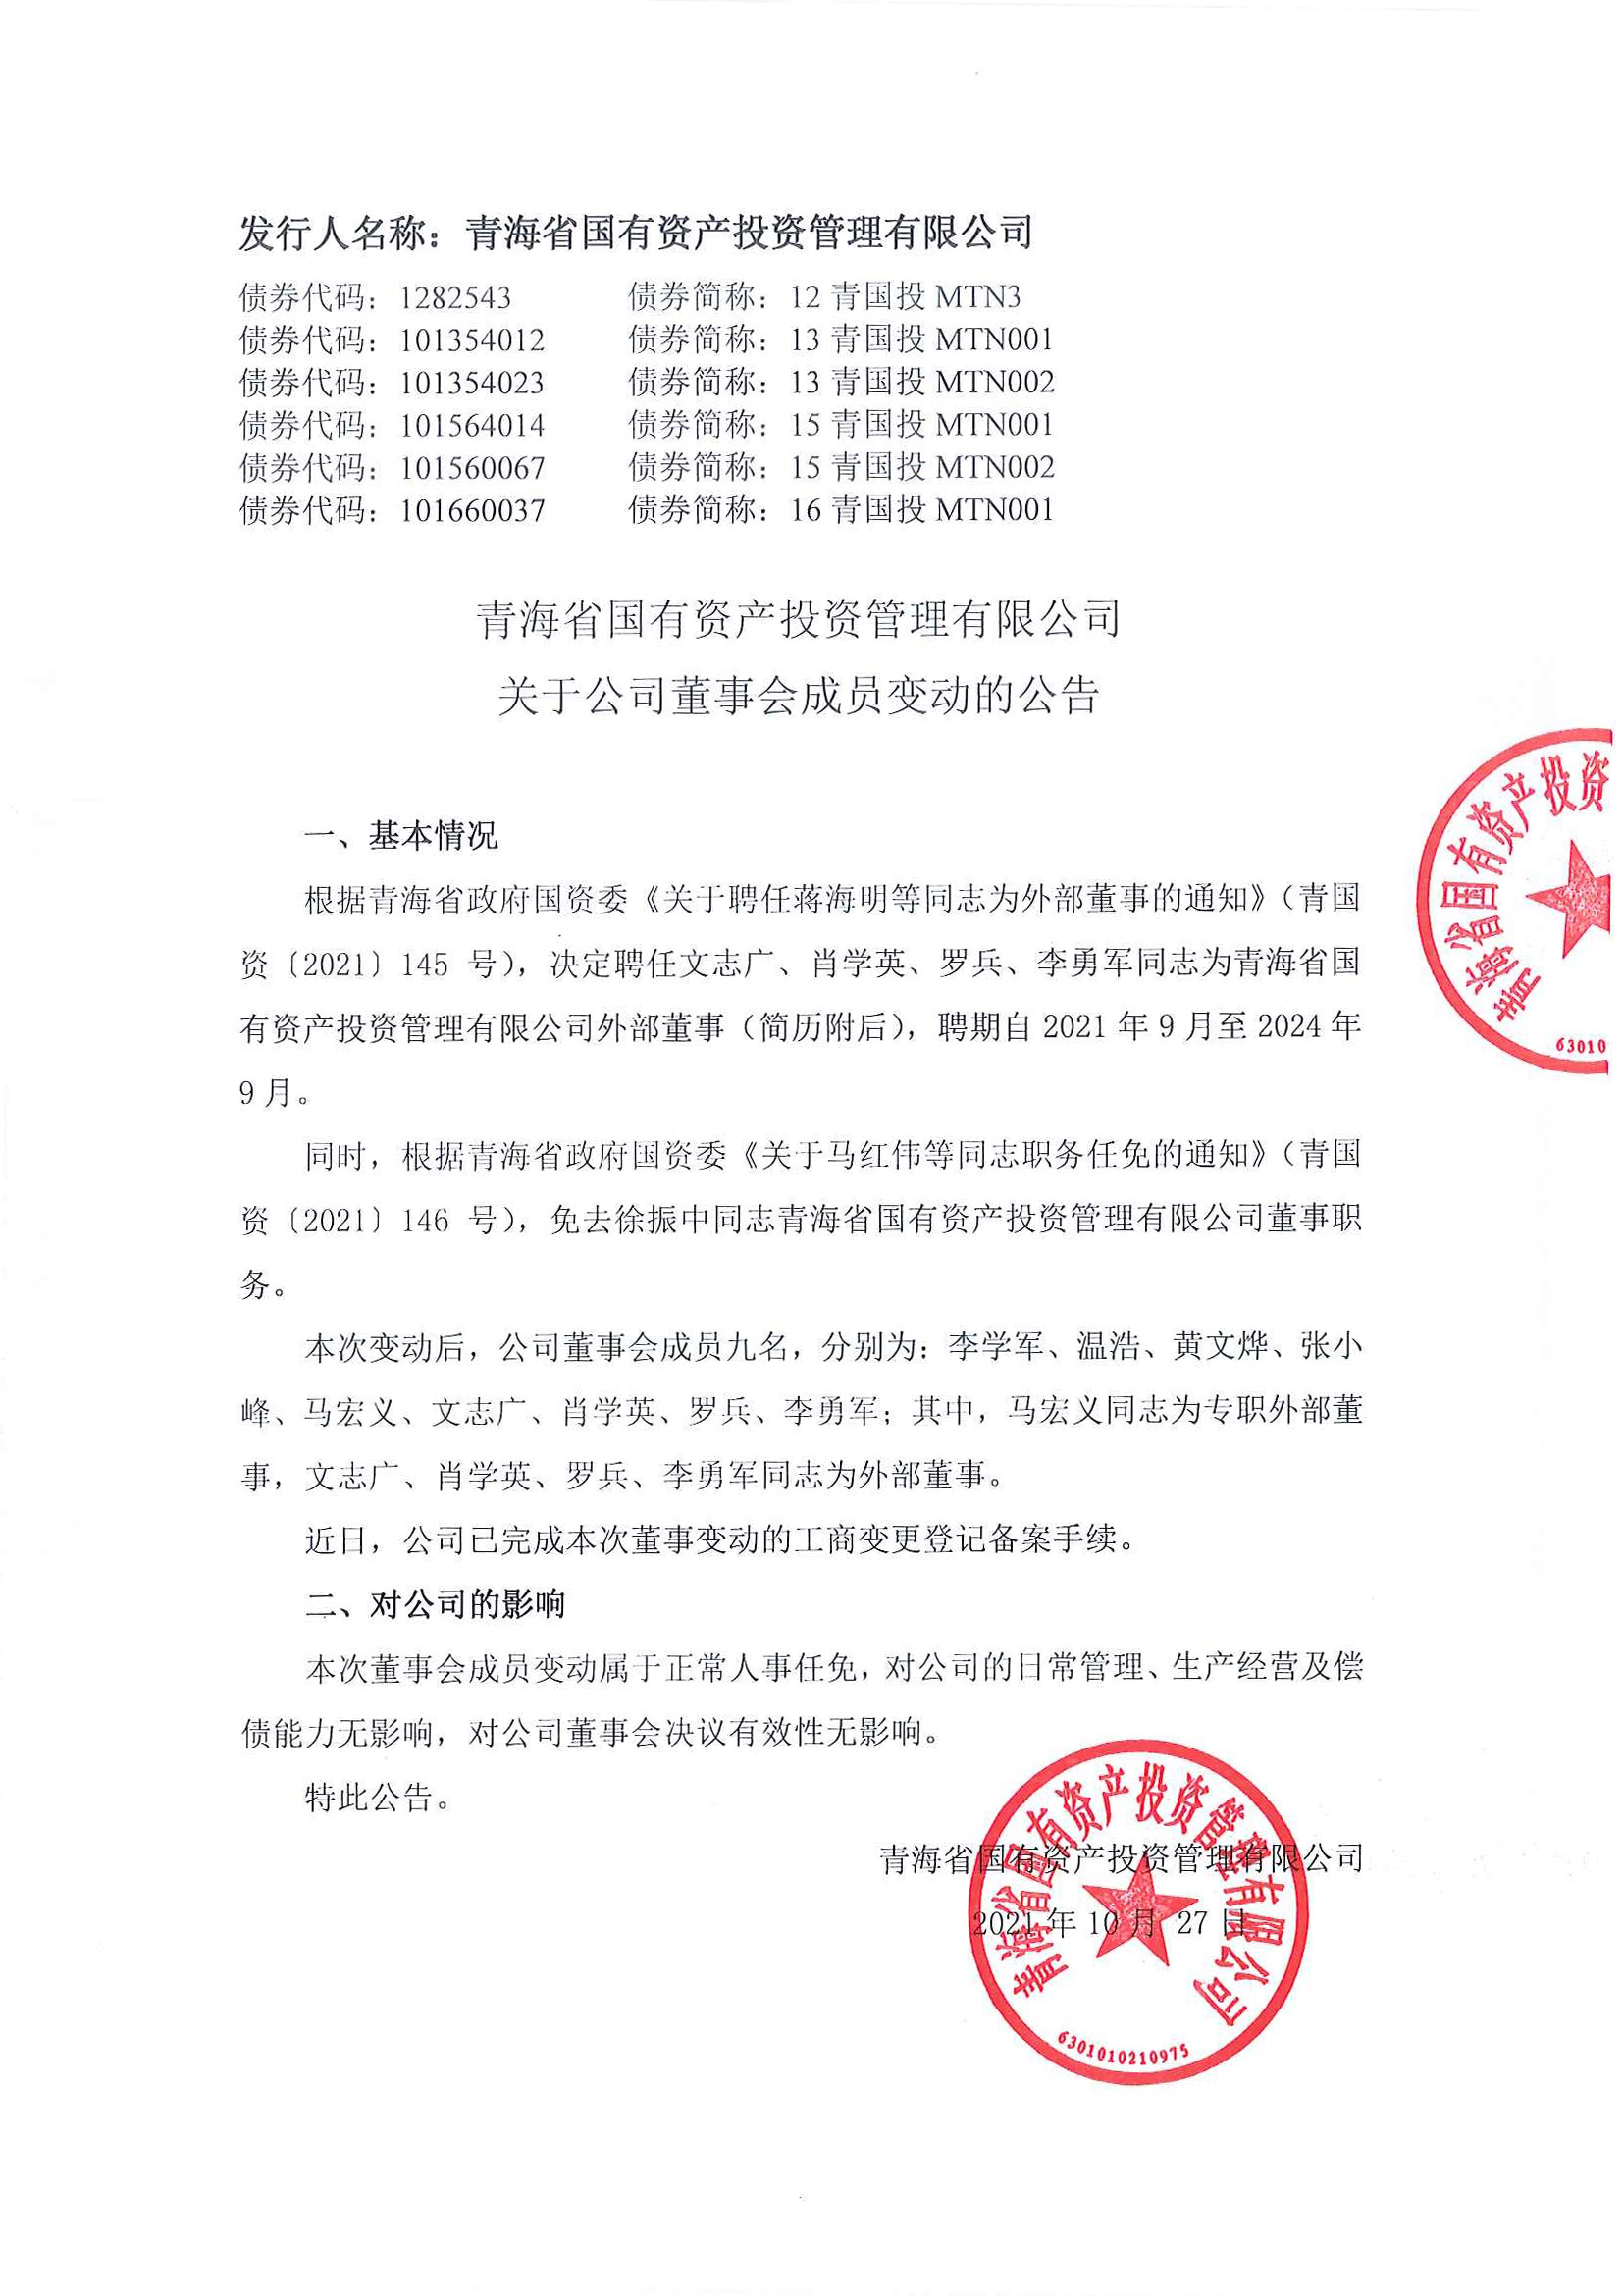 亚娱体育·(中国)官方网站关于公司董事会成员变动的公告